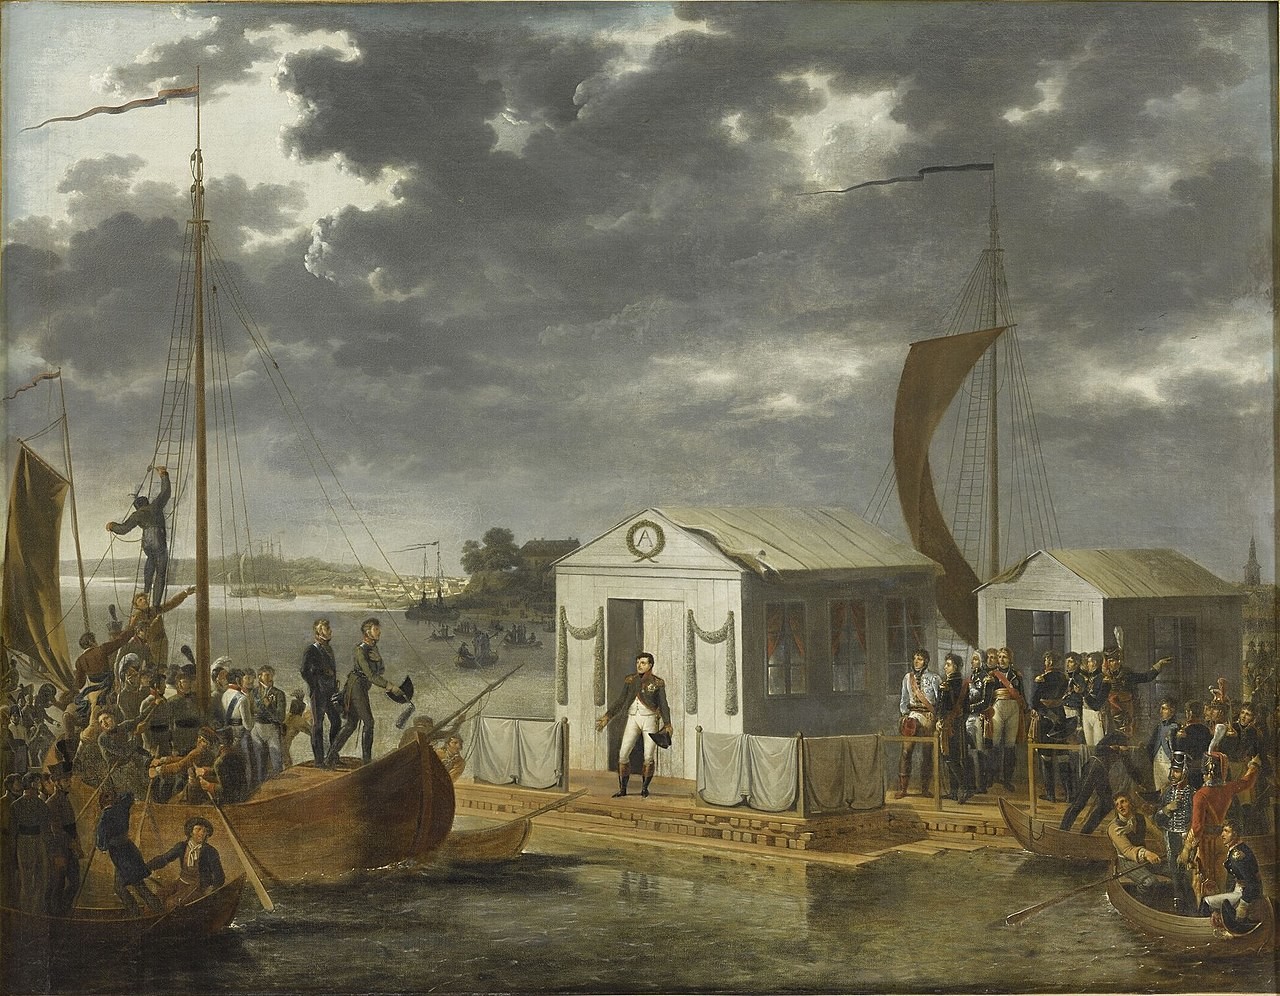 El encuentro de Napoleón I y Alejandro I en el río Niemen, el 25 de junio de 1807 (Tratado de Tilsit), por Adolph Roehn